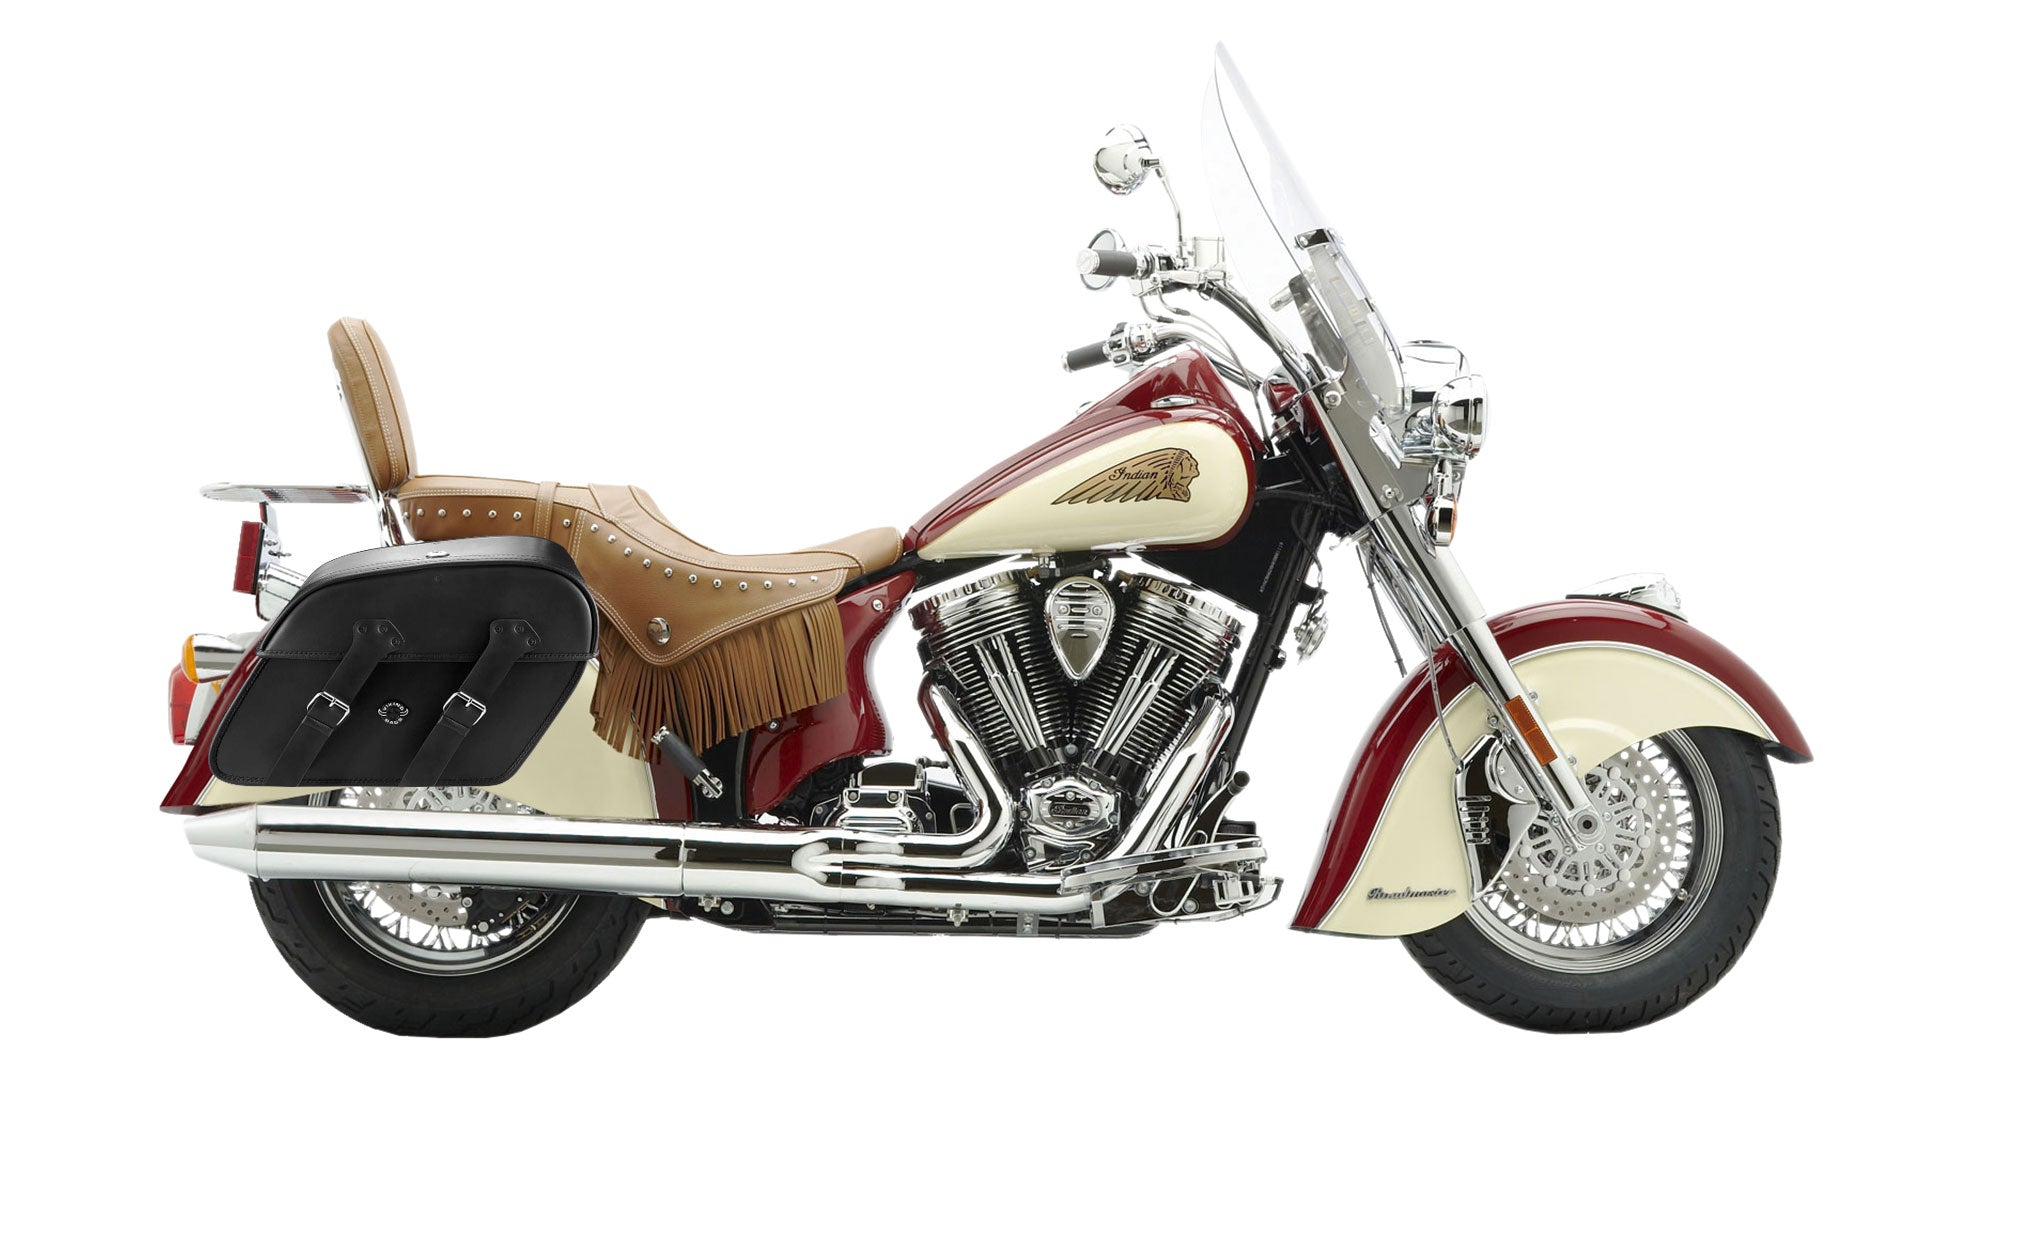 Viking Raven Extra Large Indian Chief Roadmaster Leather Motorcycle Saddlebags on Bike Photo @expand